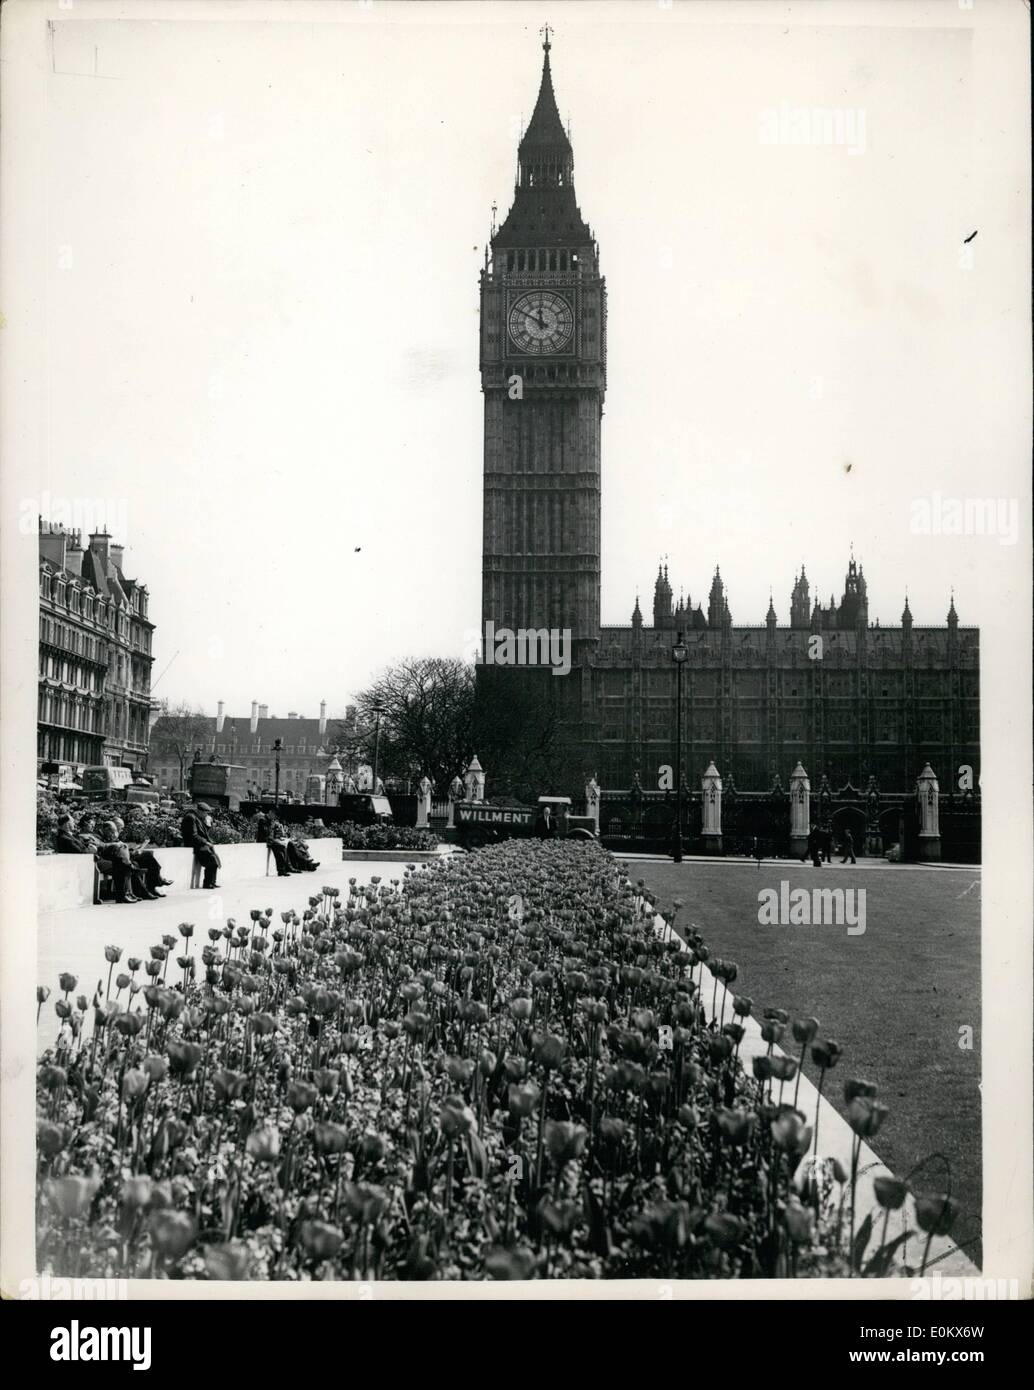 Avril 04, 1952 - Big Ben" est un tapis de fleurs. Le printemps est bien illustré avec cette photo - d'un ''tapis'' de tulipes qui semble mener directement à Big Ban - à la place du Parlement aujourd'hui. Banque D'Images